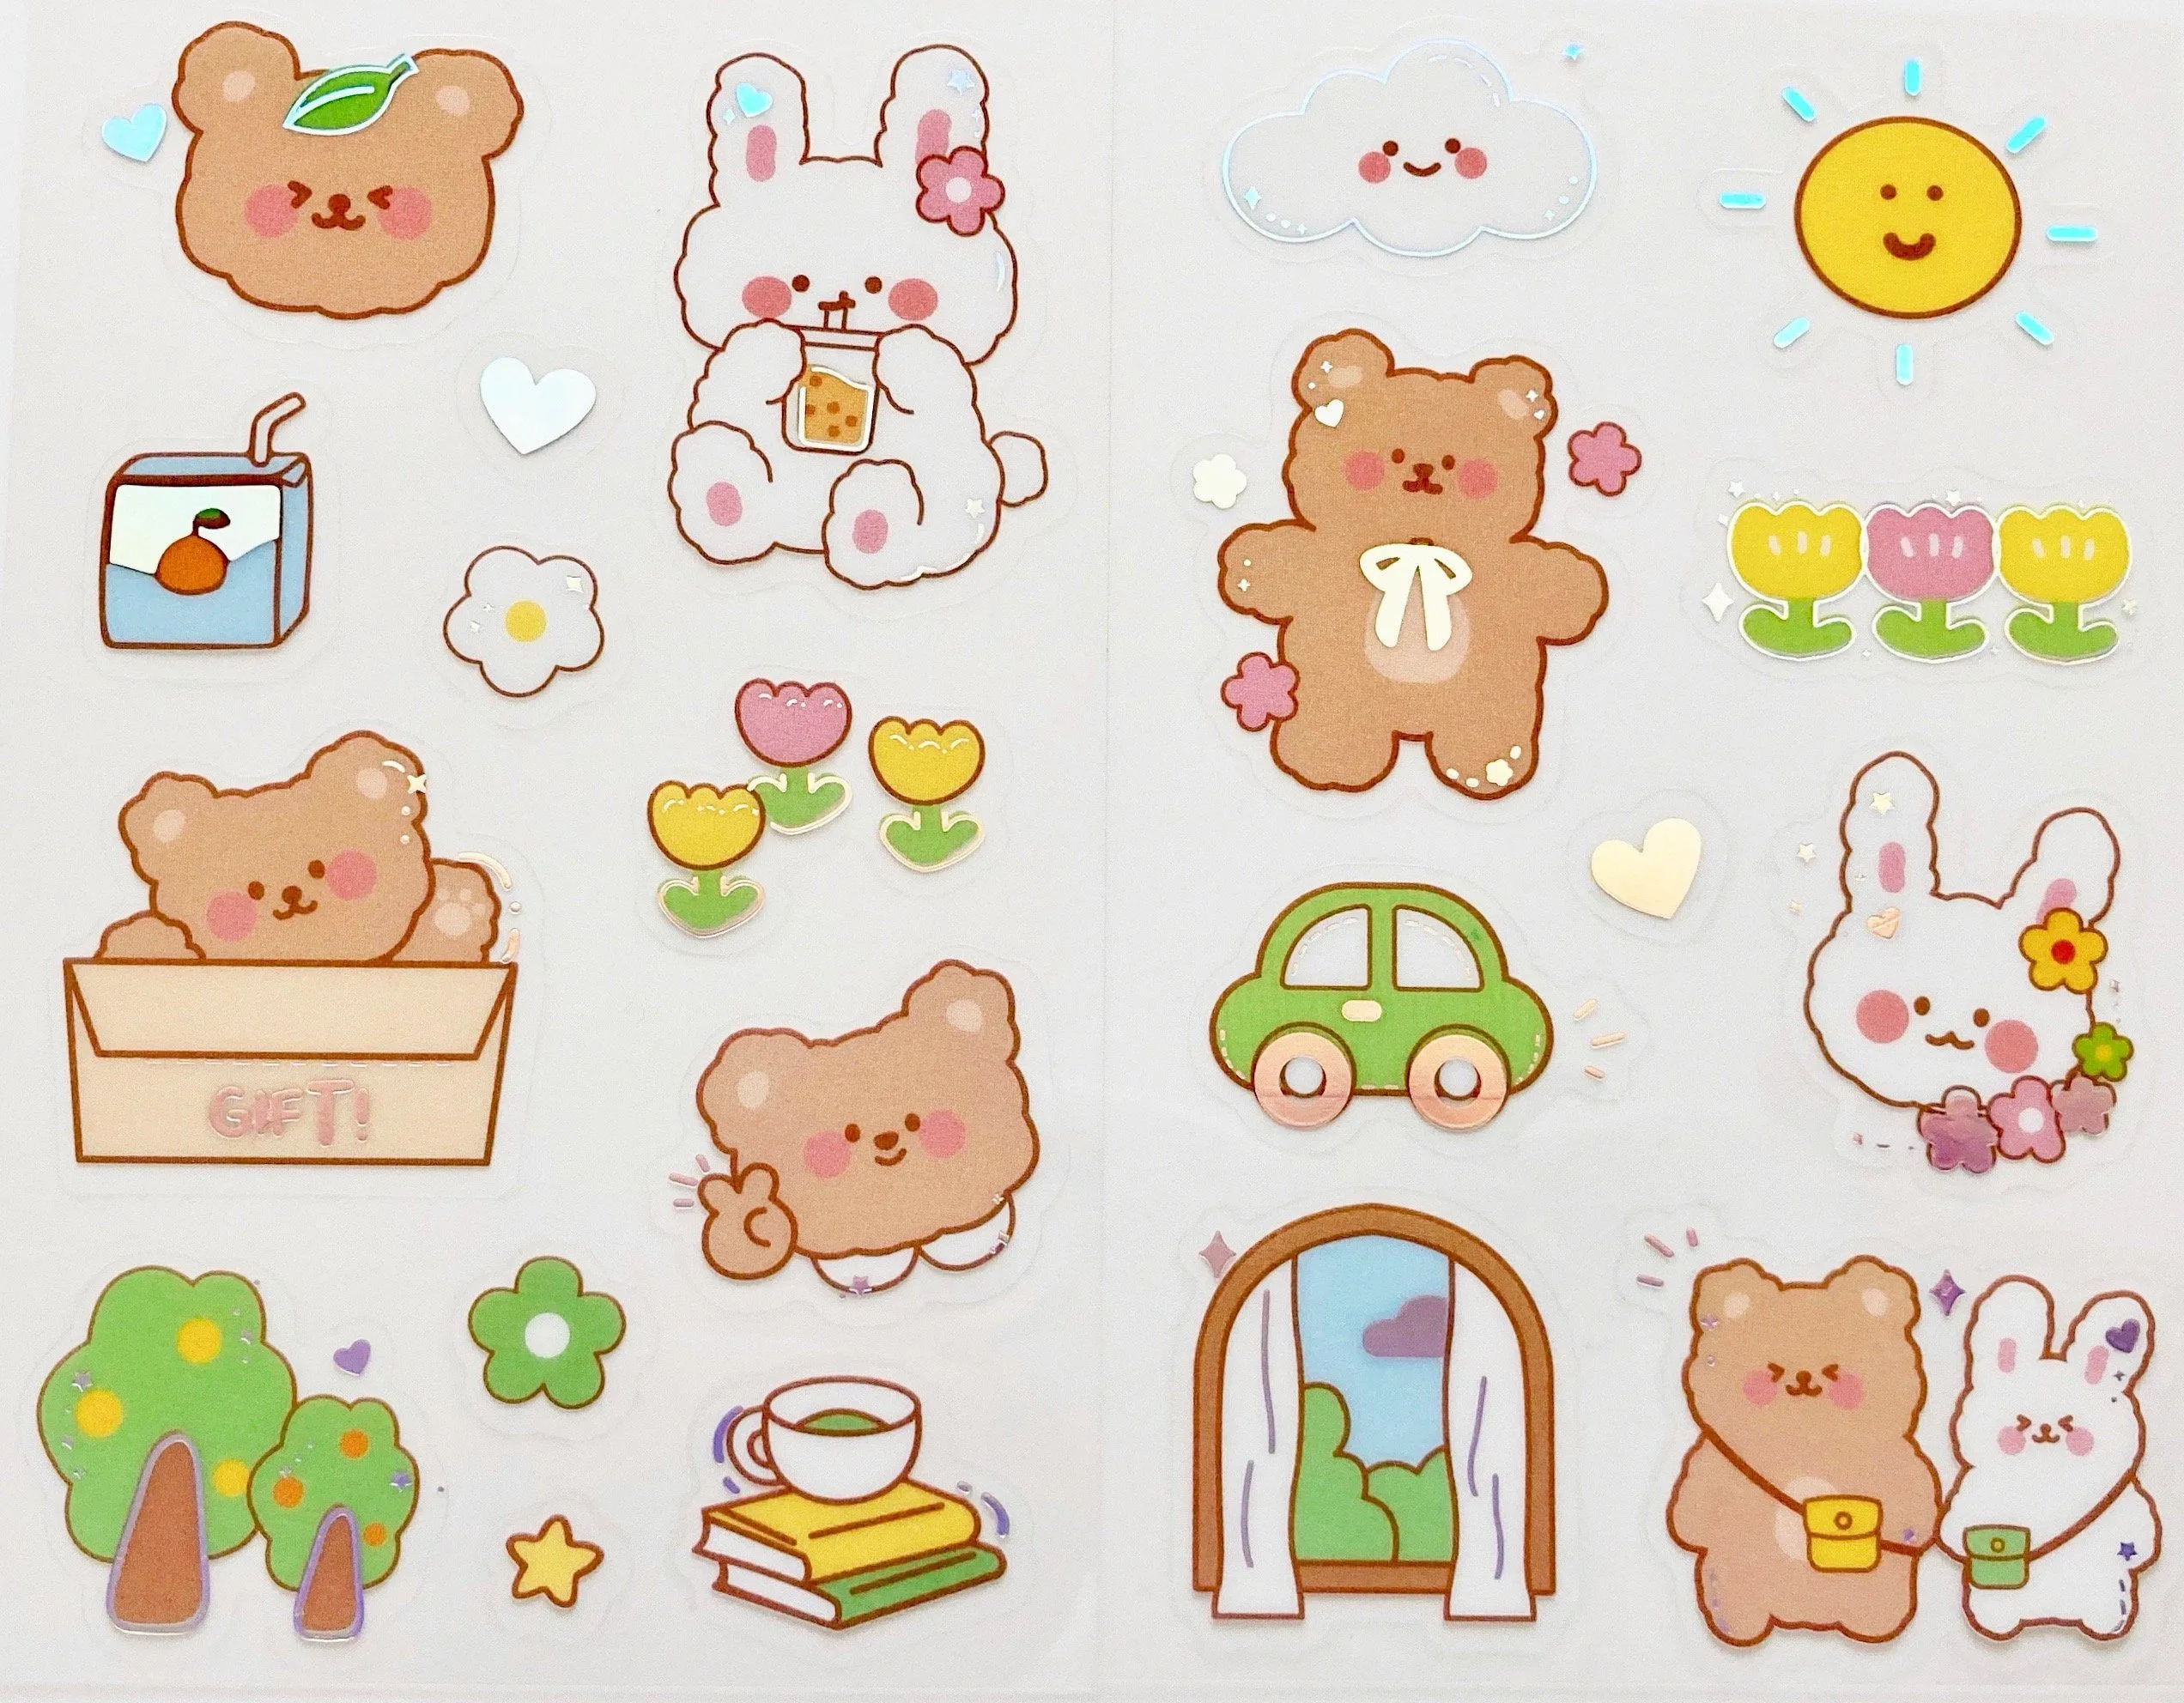 Tổng hợp 25 sticker cute vô cùng dễ thương để thêm vào bộ sưu tập của bạn